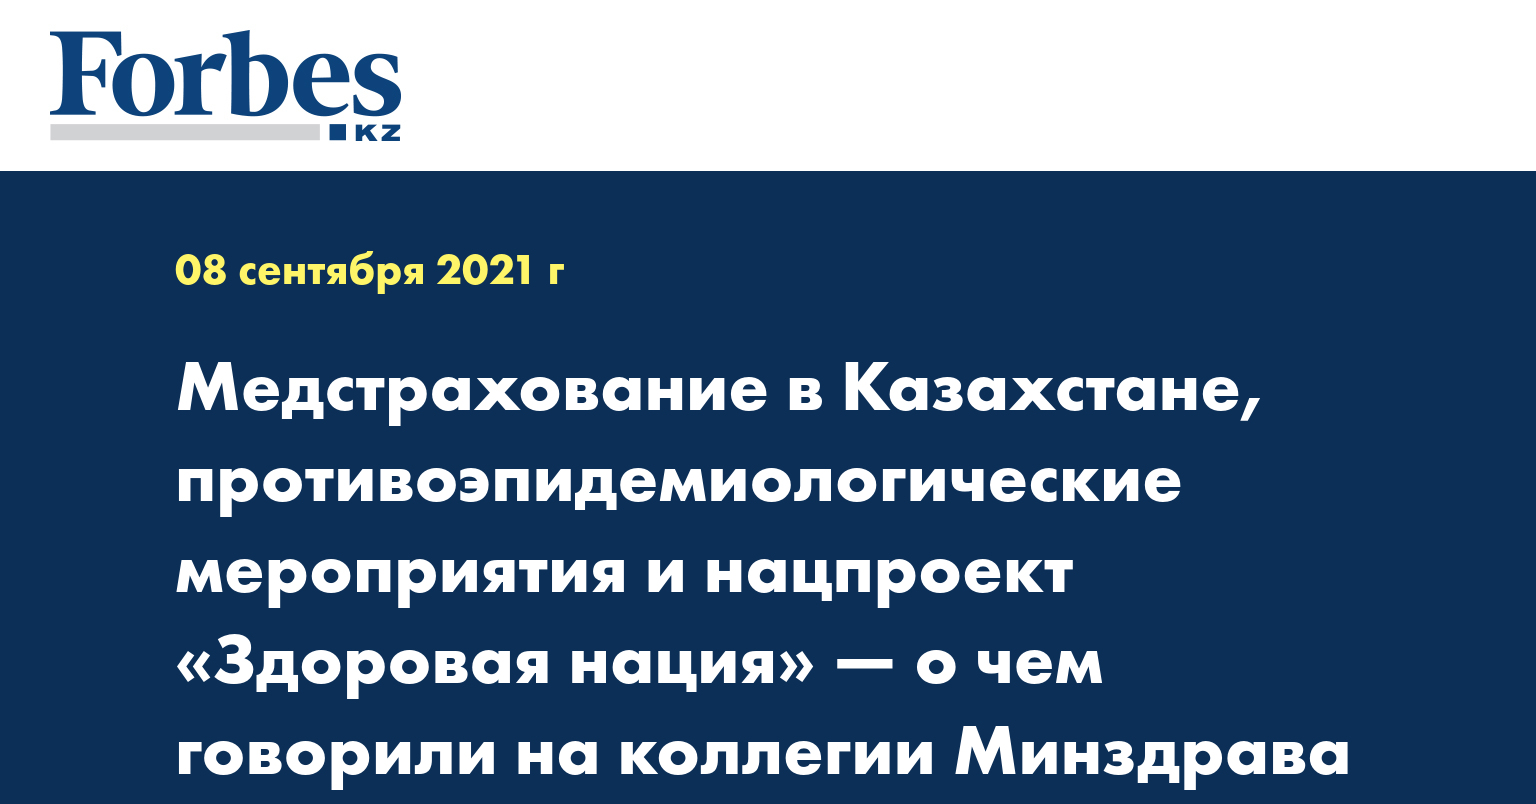 Медстрахование в Казахстане, противоэпидемиологические мероприятия и нацпроект «Здоровая нация» — о чем говорили на коллегии Минздрава РК